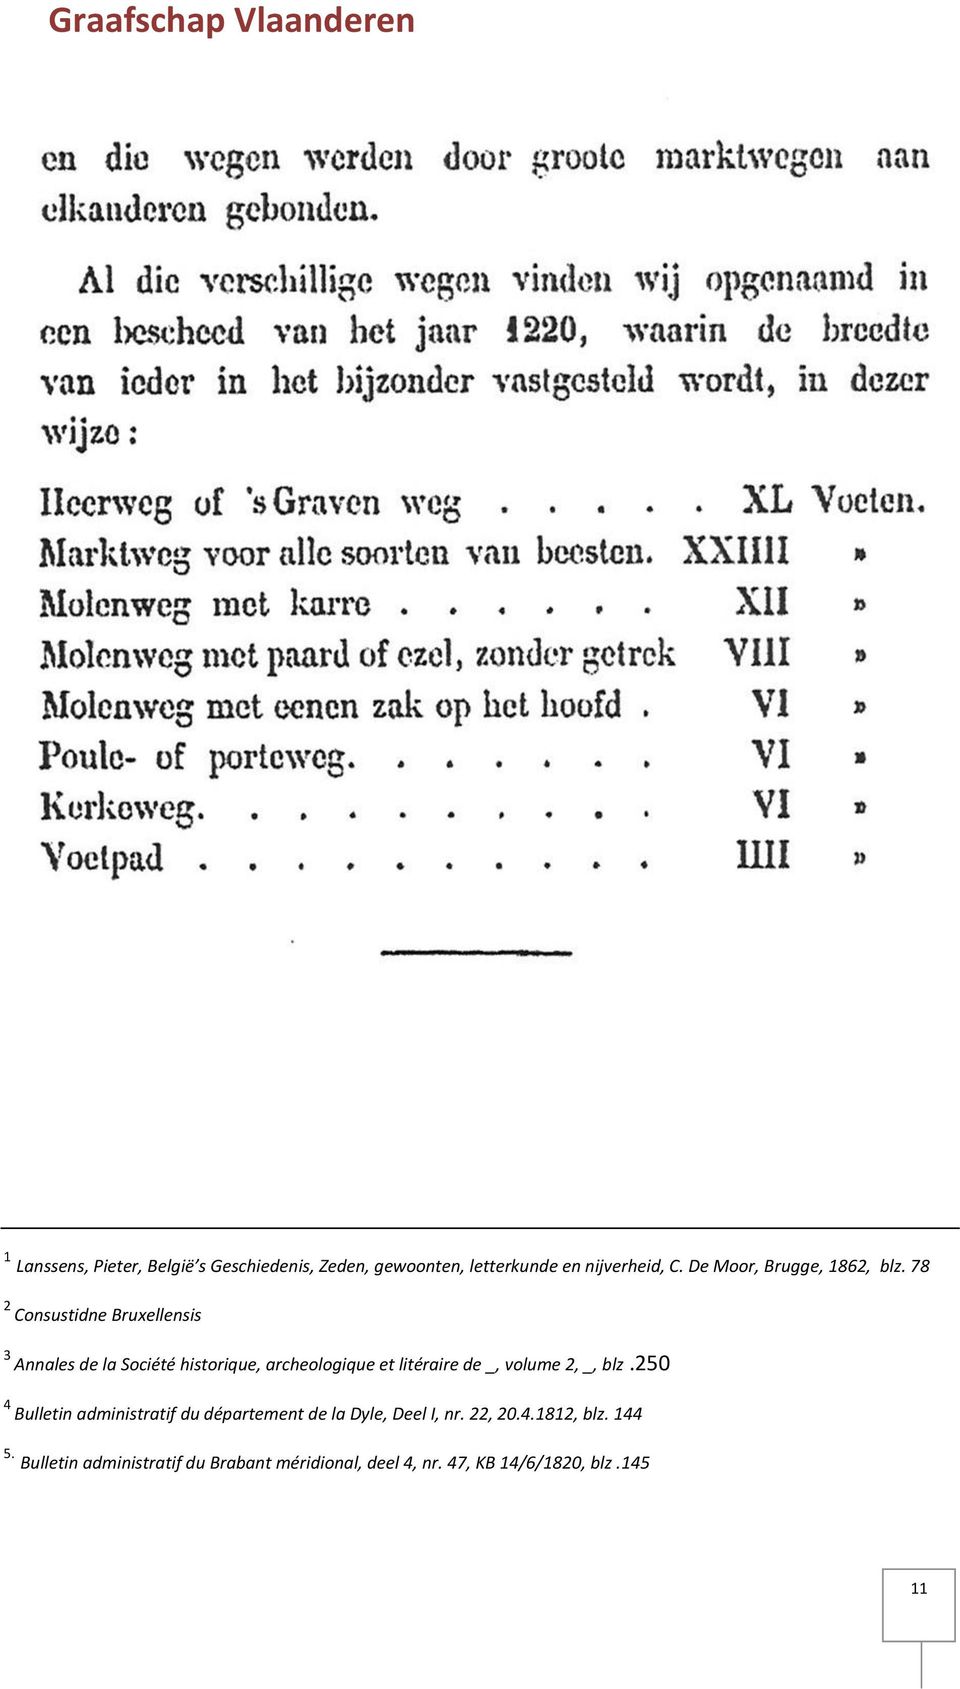 78 2 Consustidne Bruxellensis 3 Annales de la Société historique, archeologique et litéraire de _, volume 2,